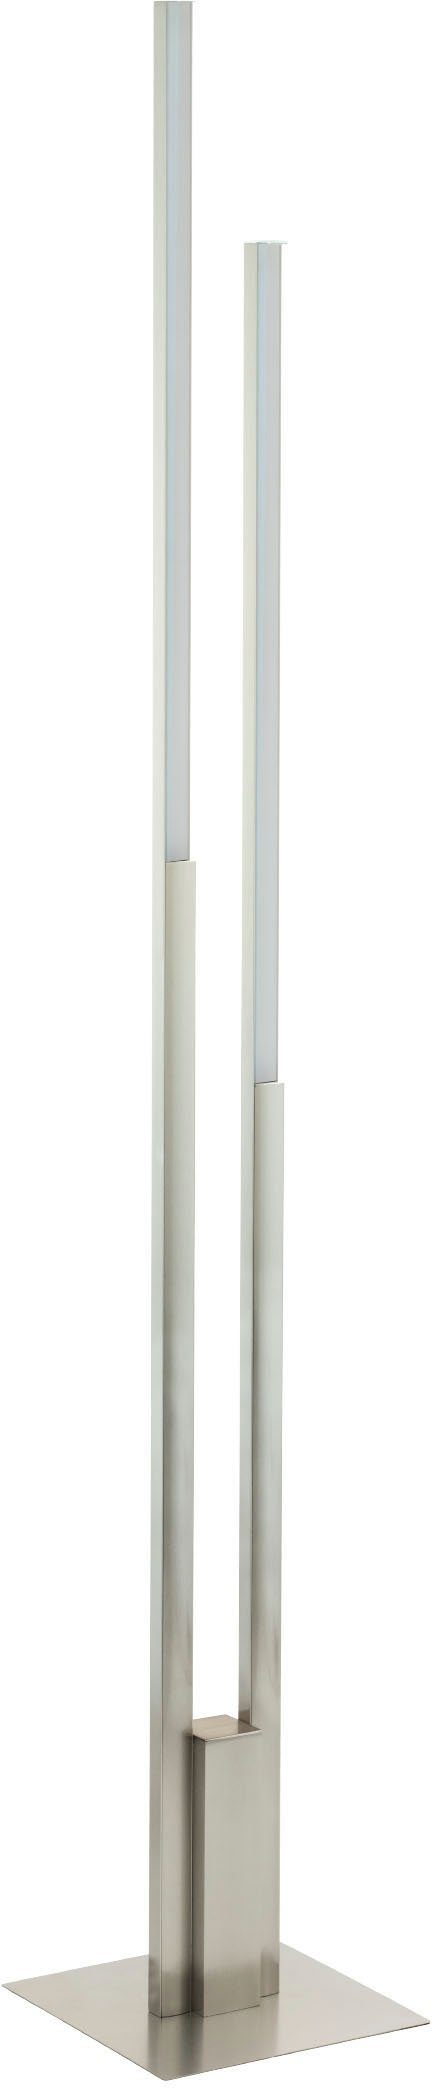 EGLO Stehlampe FRAIOLI-Z, LED fest integriert, warmweiß - kaltweiß,  Stehleuchte in nickel aus Alu - 2X17W - warmweiß - kaltweiß